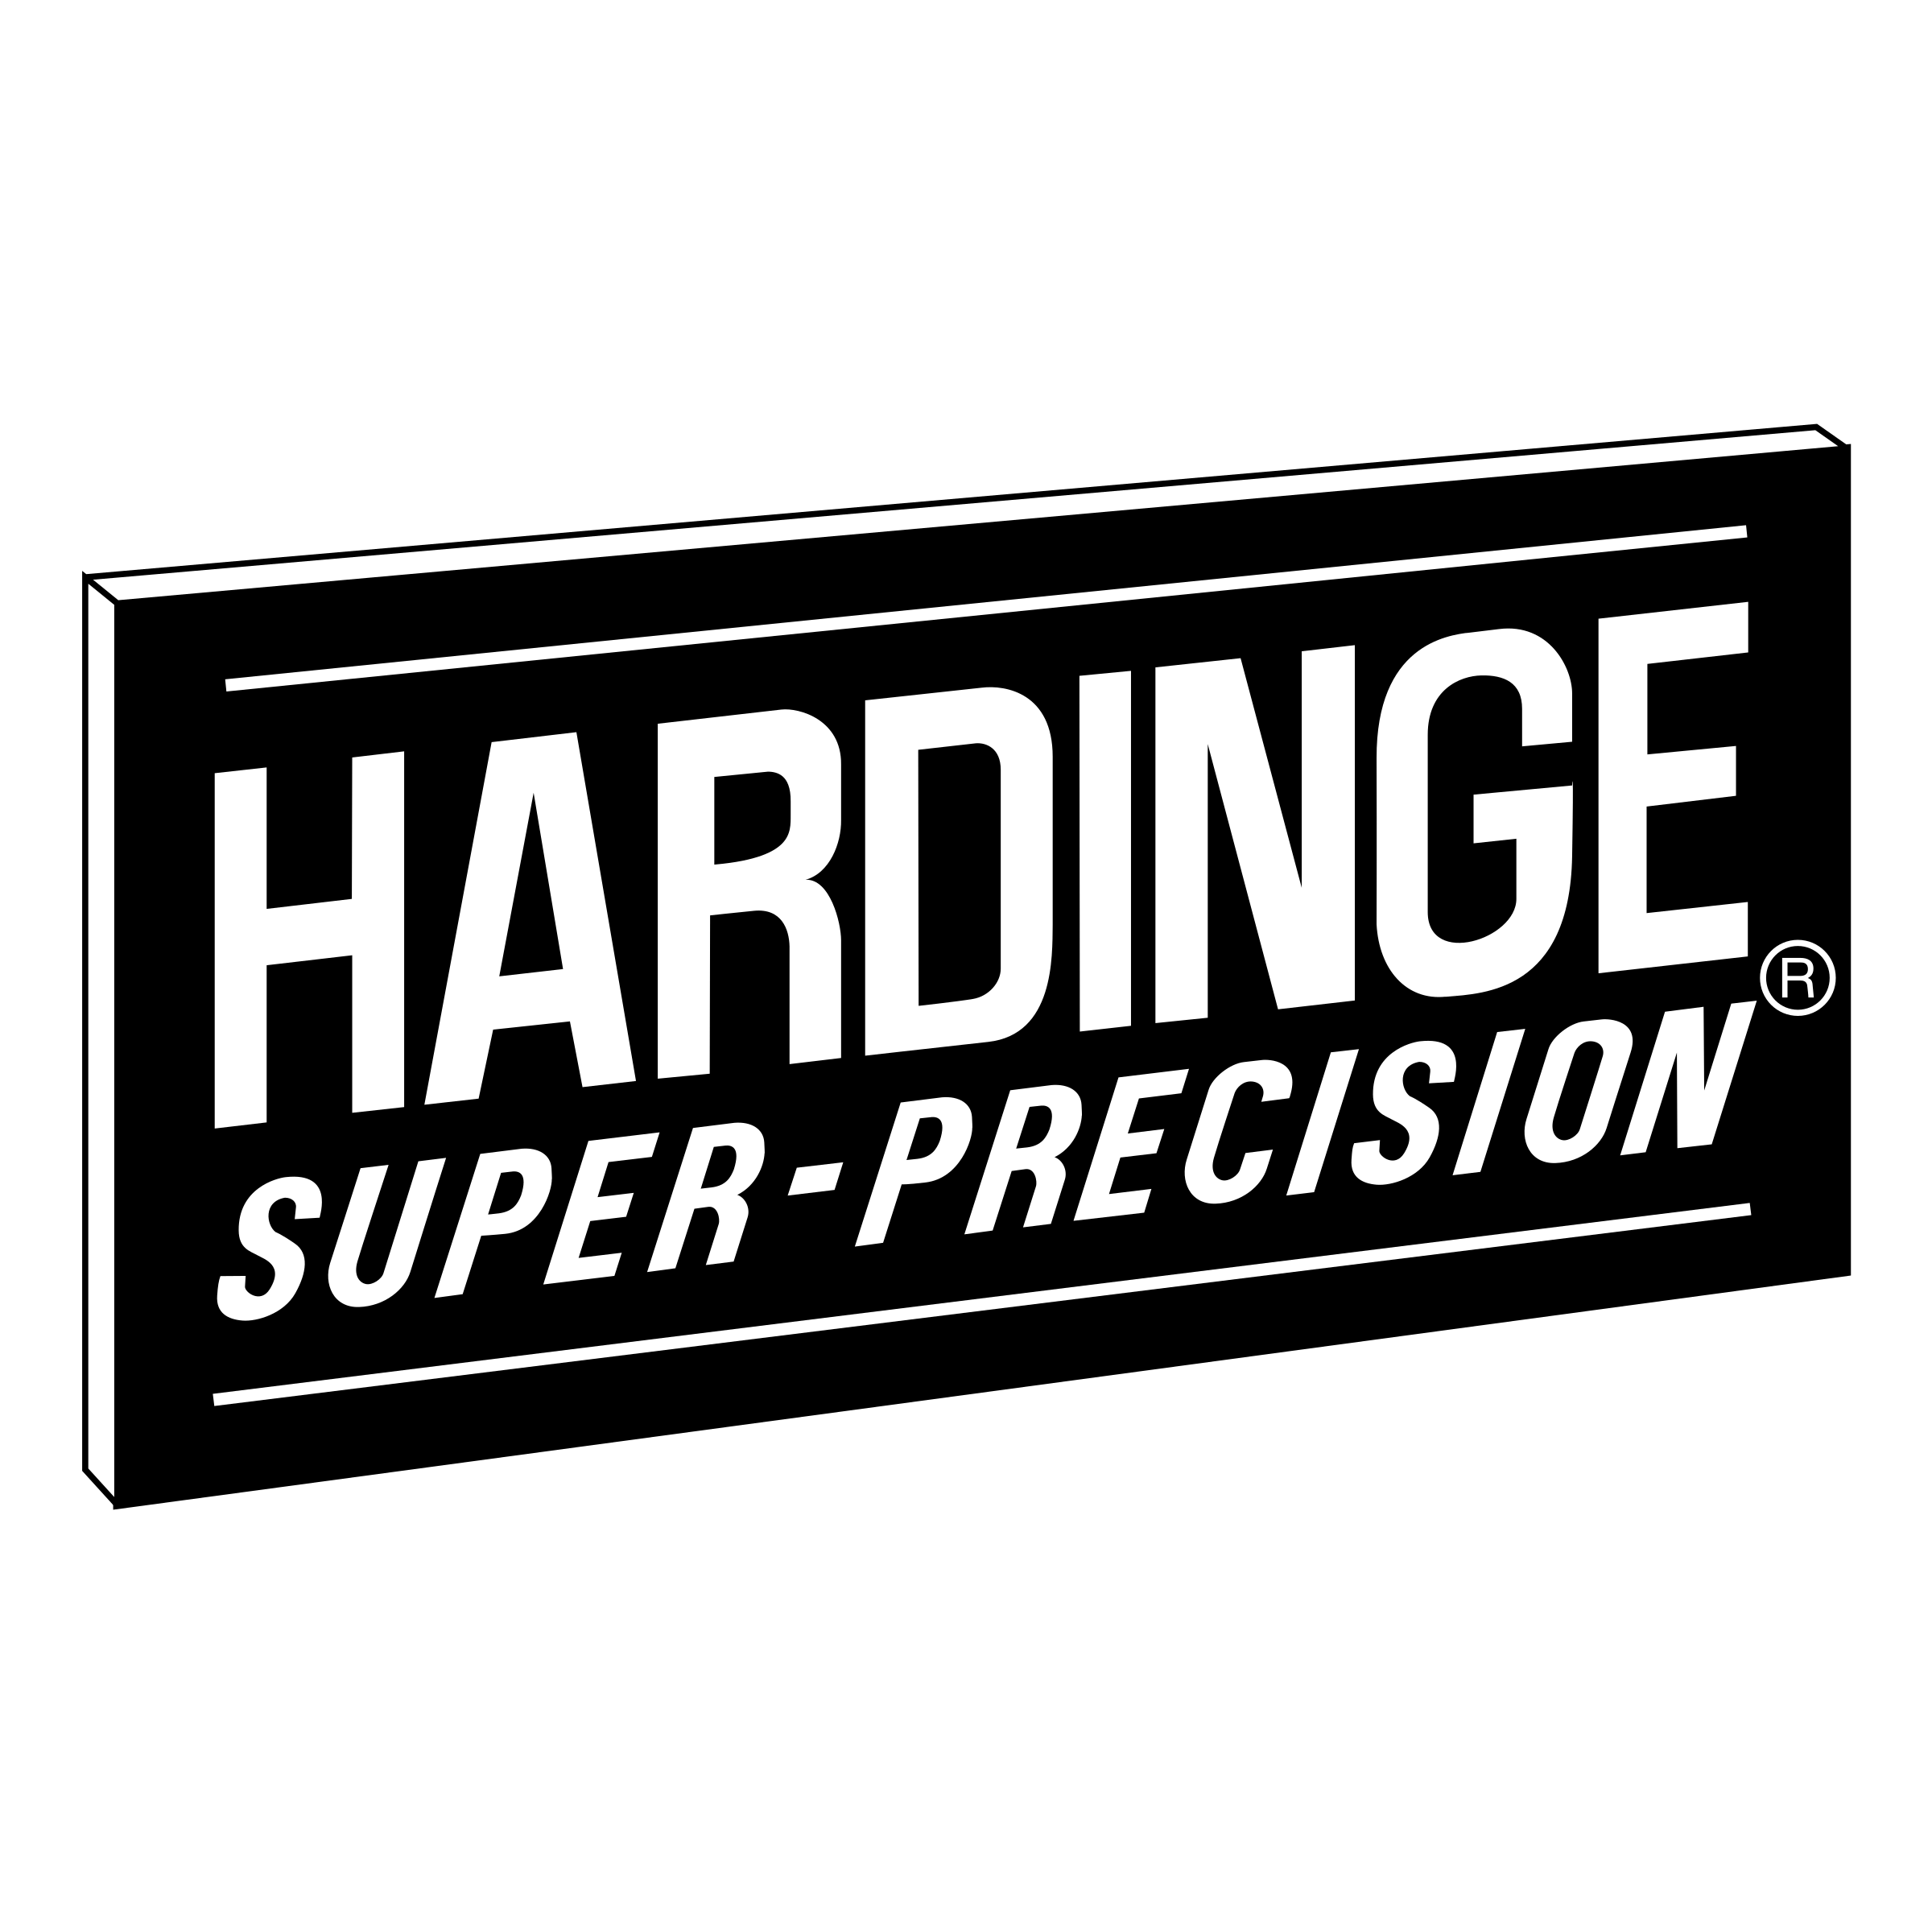 Hardinge Logo - Hardinge Super Precision Logo PNG Transparent & SVG Vector - Freebie ...